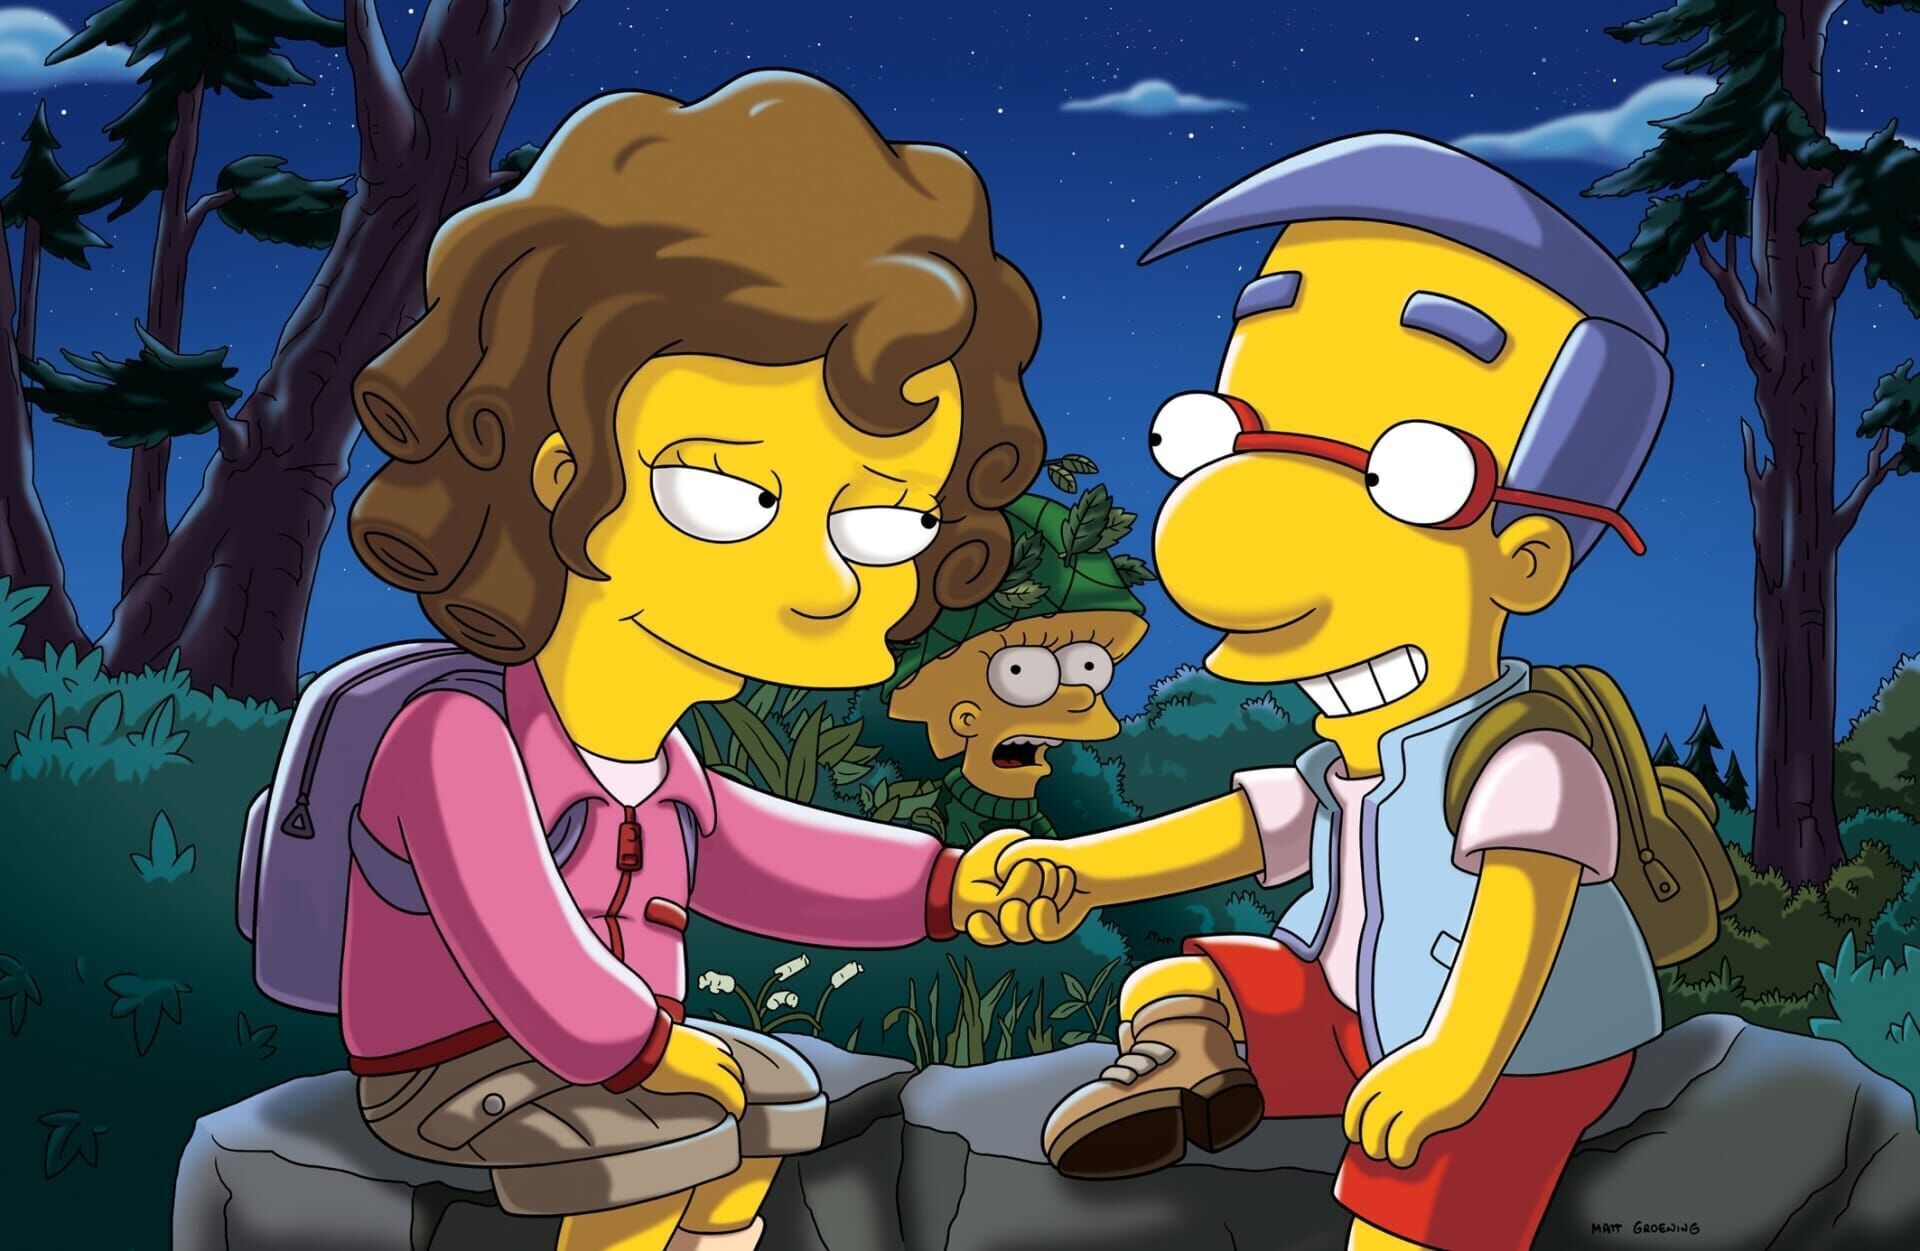 Les Simpson - Homer aux mains d'argent